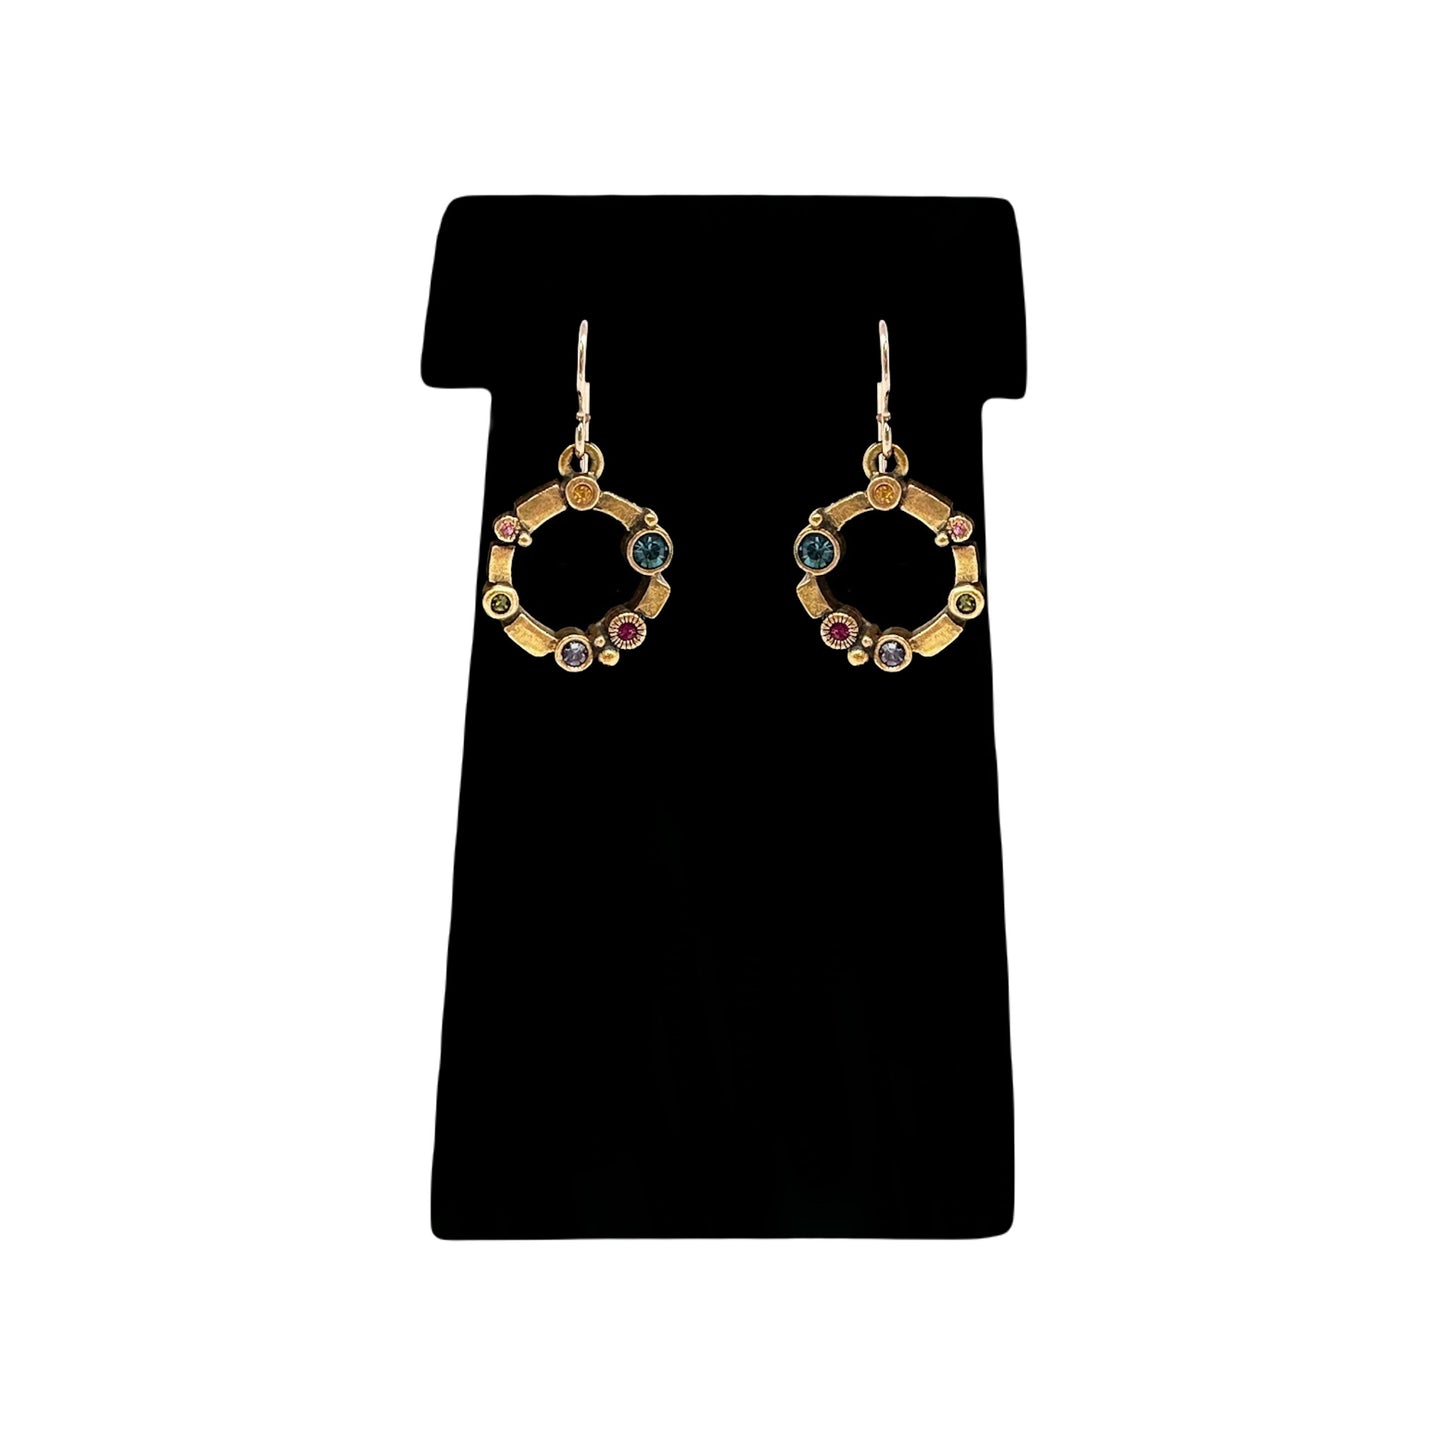 Patricia Locke Kiva Earrings in Gold Fling